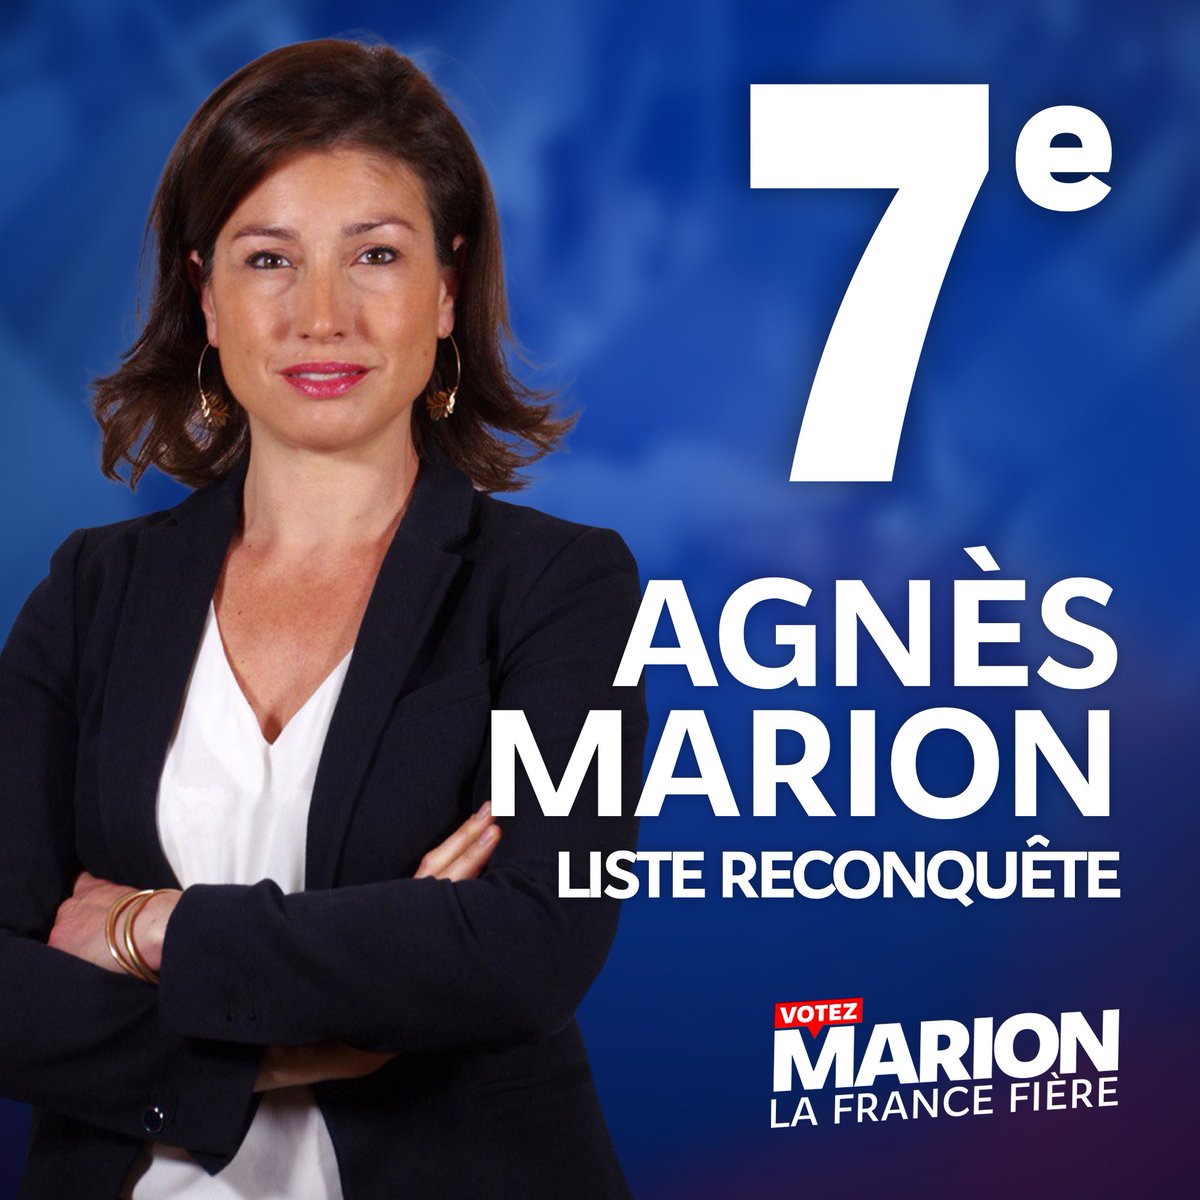 Très honorée de figurer en 7e position sur la liste @Reconquete_off menée par @MarionMarechal !

Comptez sur mon engagement total pour lutter contre :
👉🏻Ursula von der Leyen
👉🏻le fanatisme vert dont nous pratiquons les effets délétères à #Lyon
👉🏻l’activisme woke/LGBT
#VotezMarion